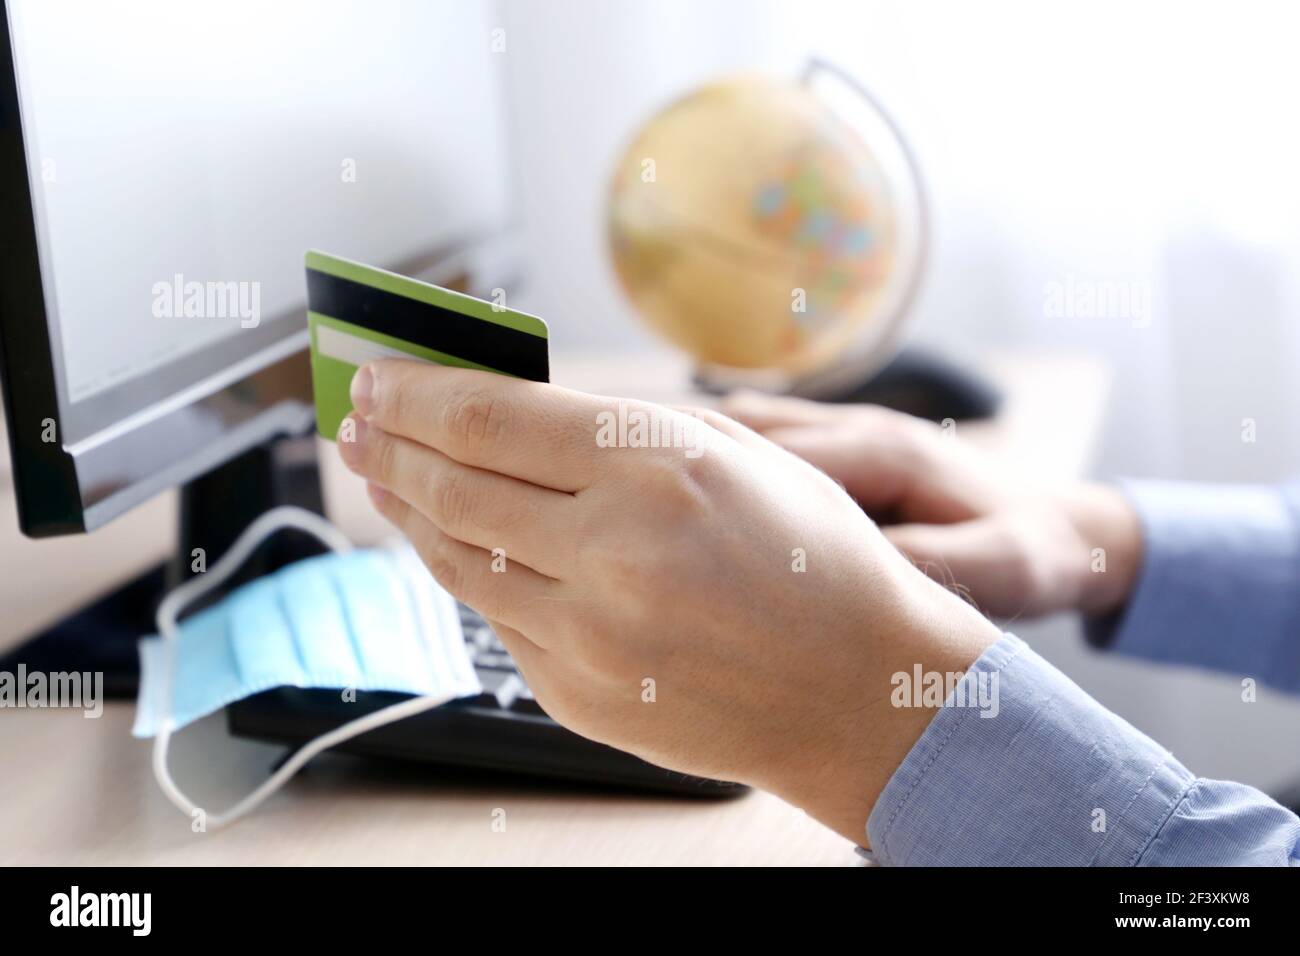 Homme tenant les types de carte de crédit de banque sur le clavier de PC. Concept d'achat et de paiement en ligne, l'achat d'une tournée de voyage pendant la pandémie de coronavirus Banque D'Images